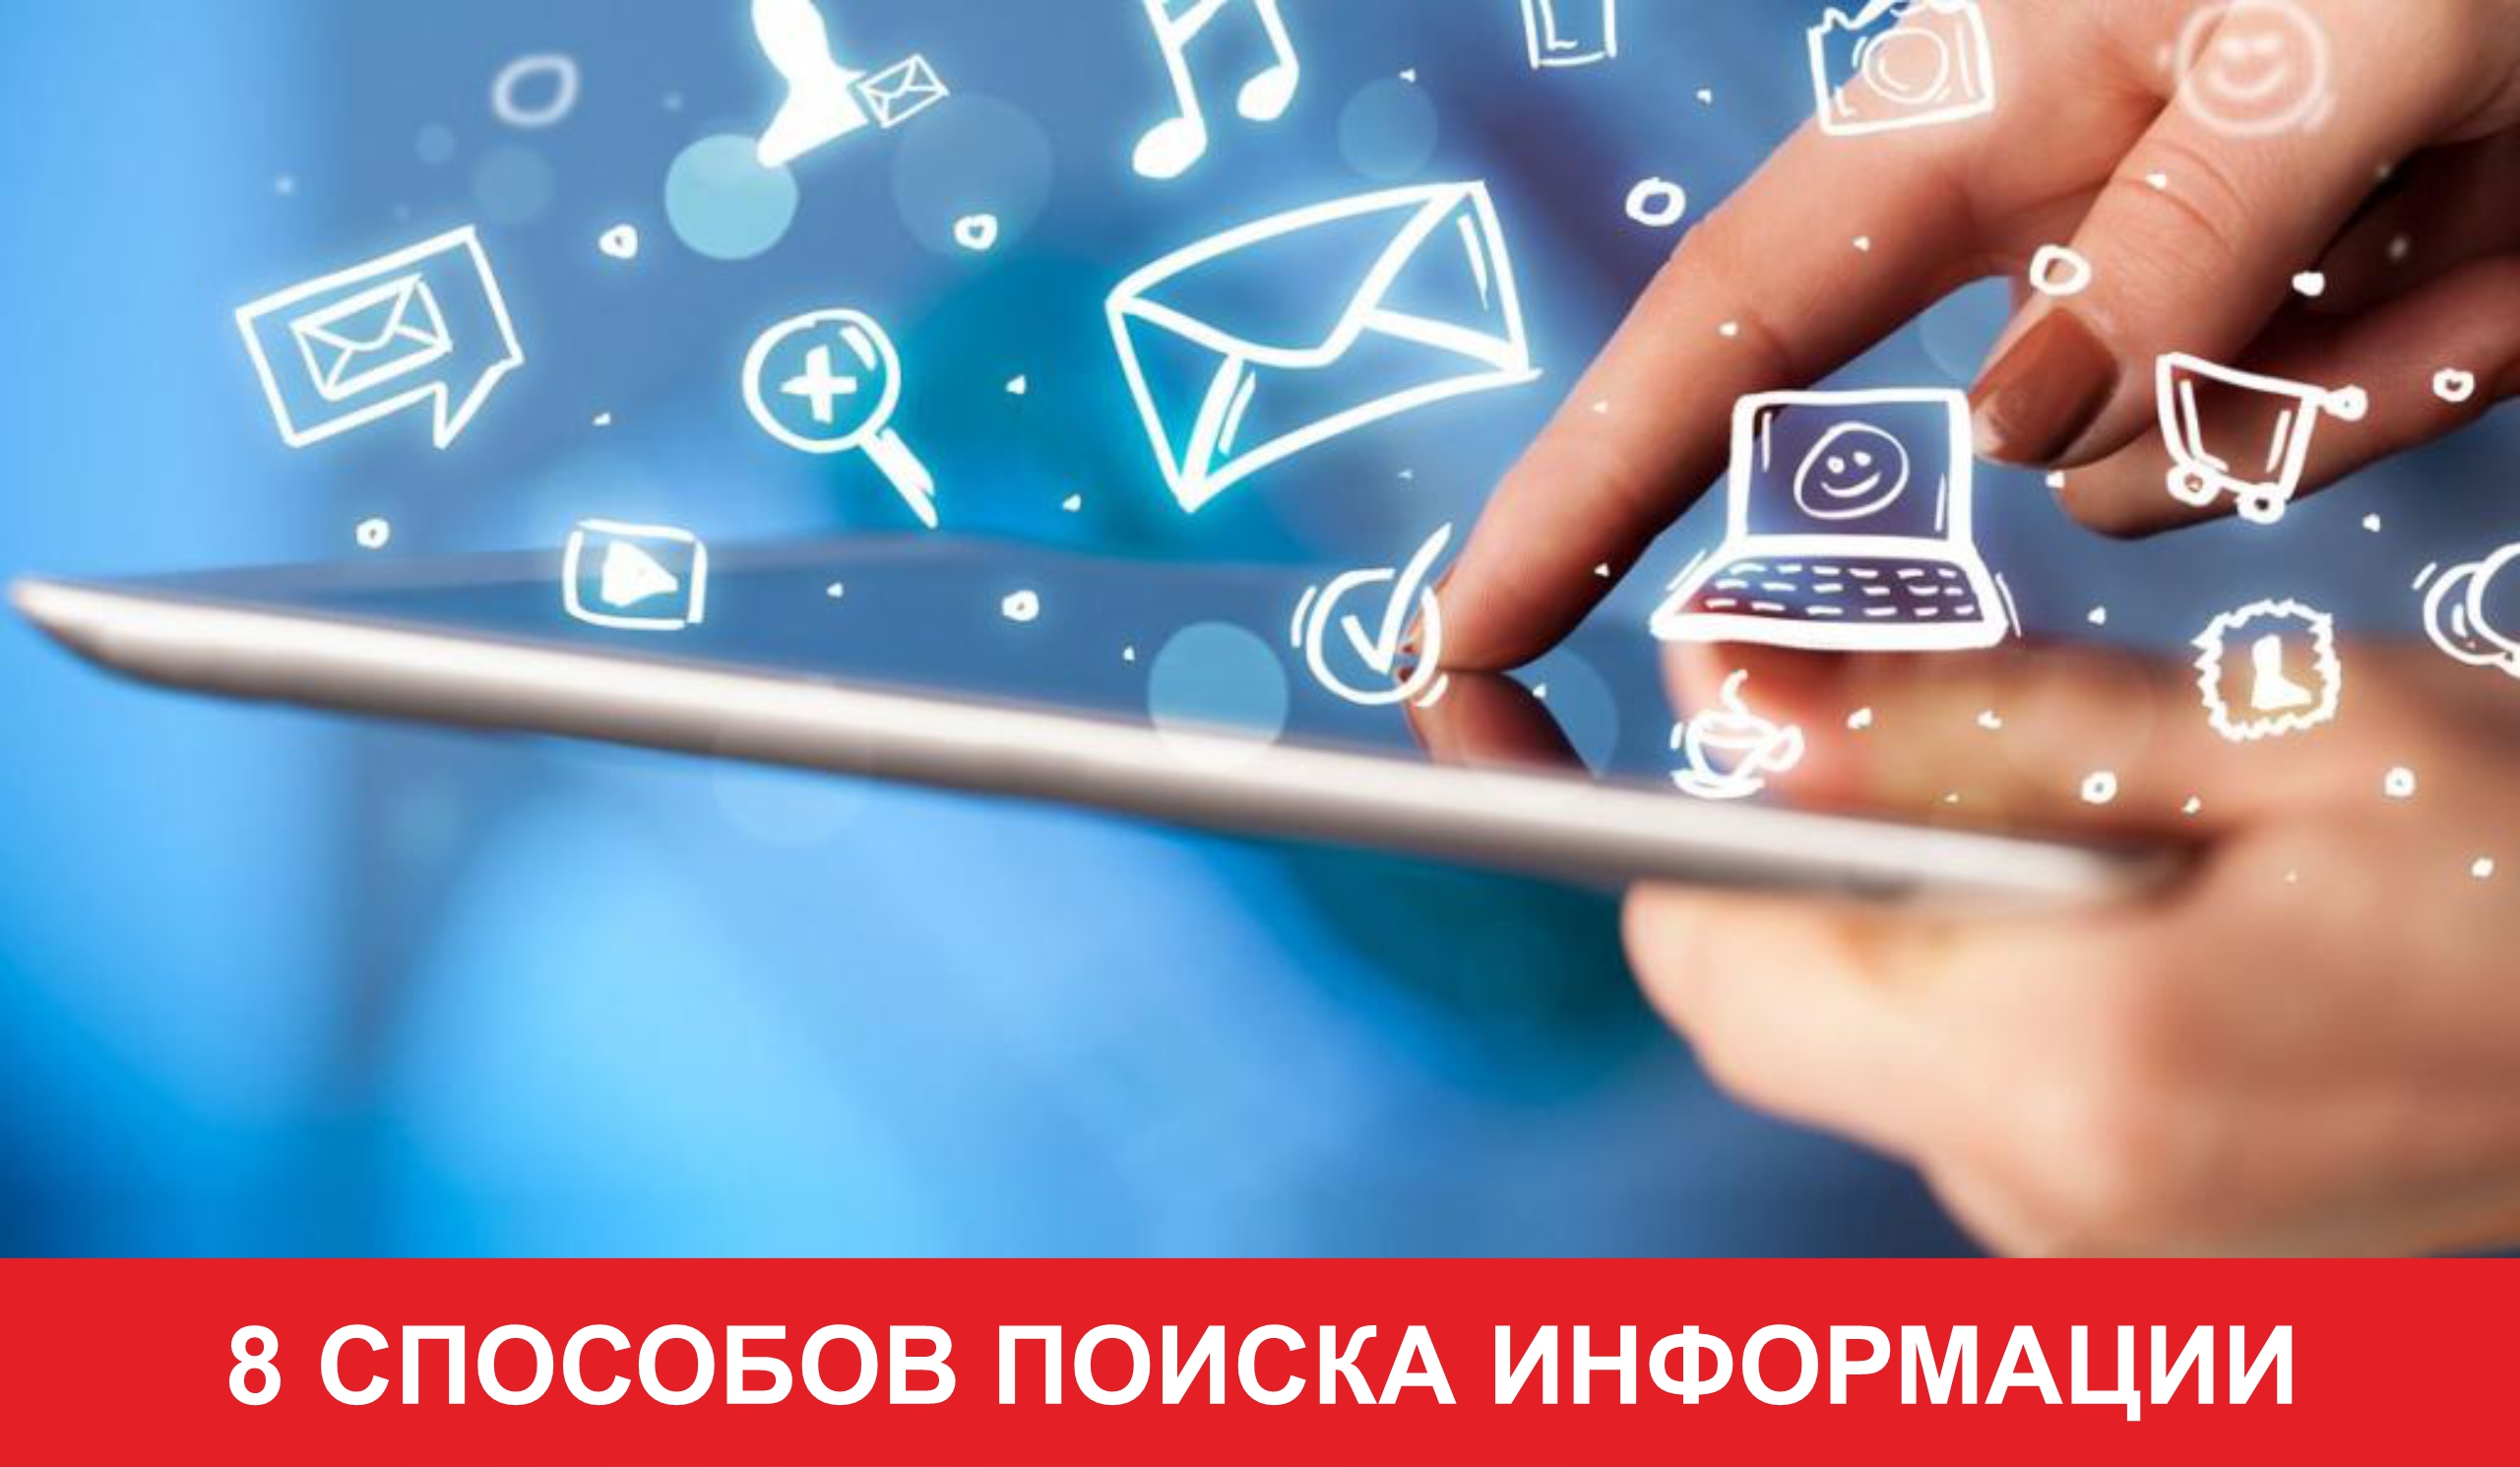 8 способов поиска информации в Яндексе